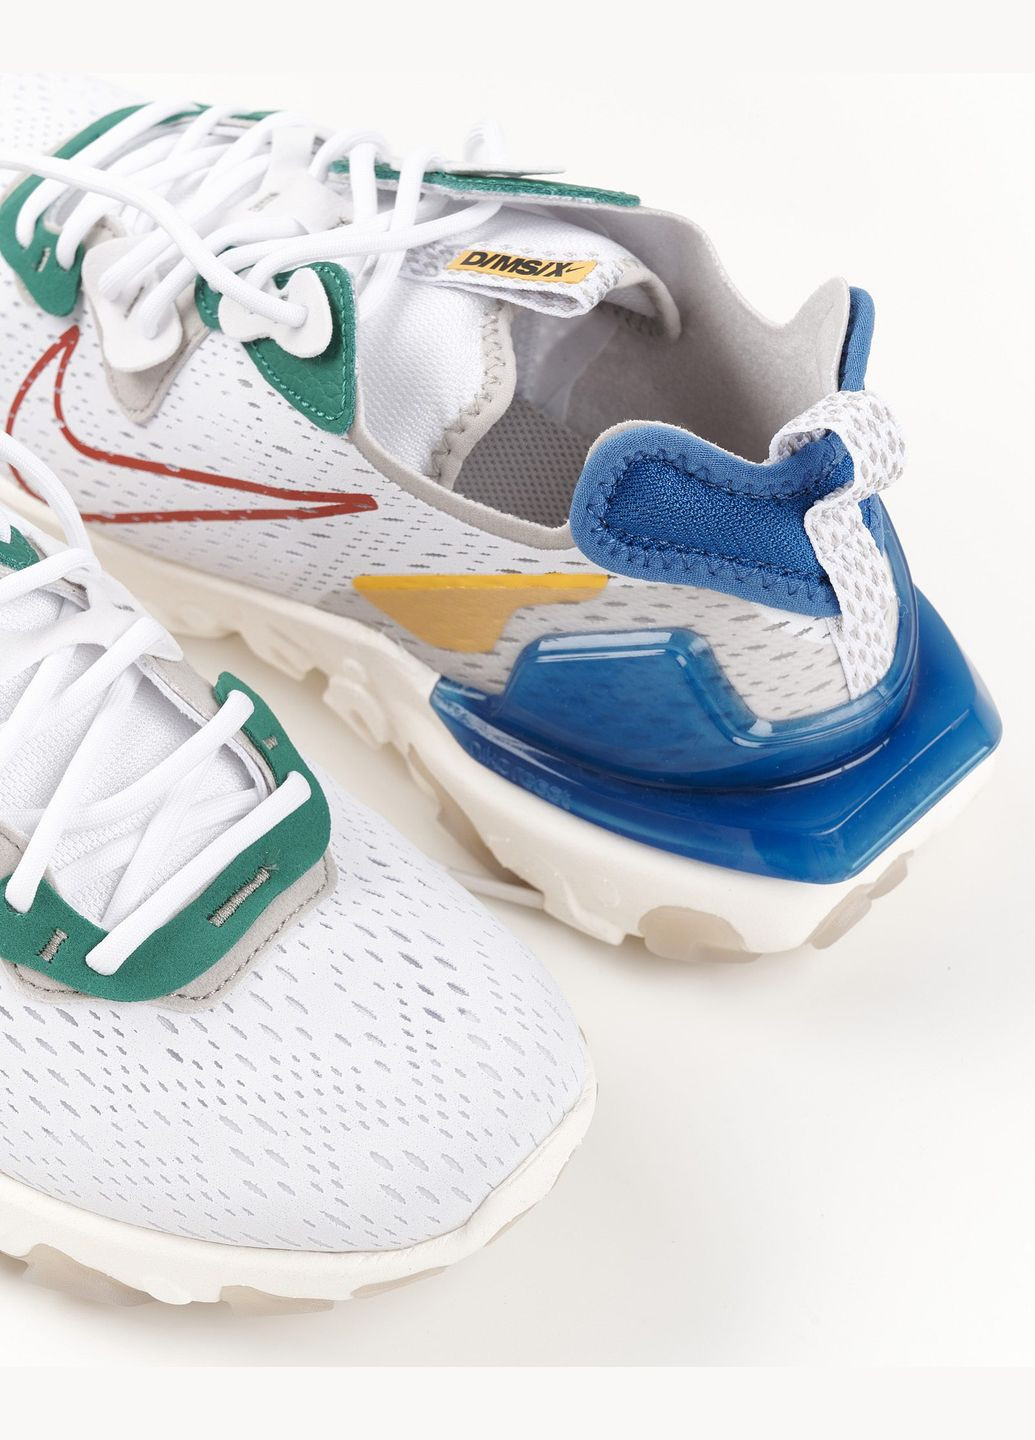 Білі всесезон кросівки чоловічі react vision white dv3500-100 весна-літо текстиль сітка білі Nike